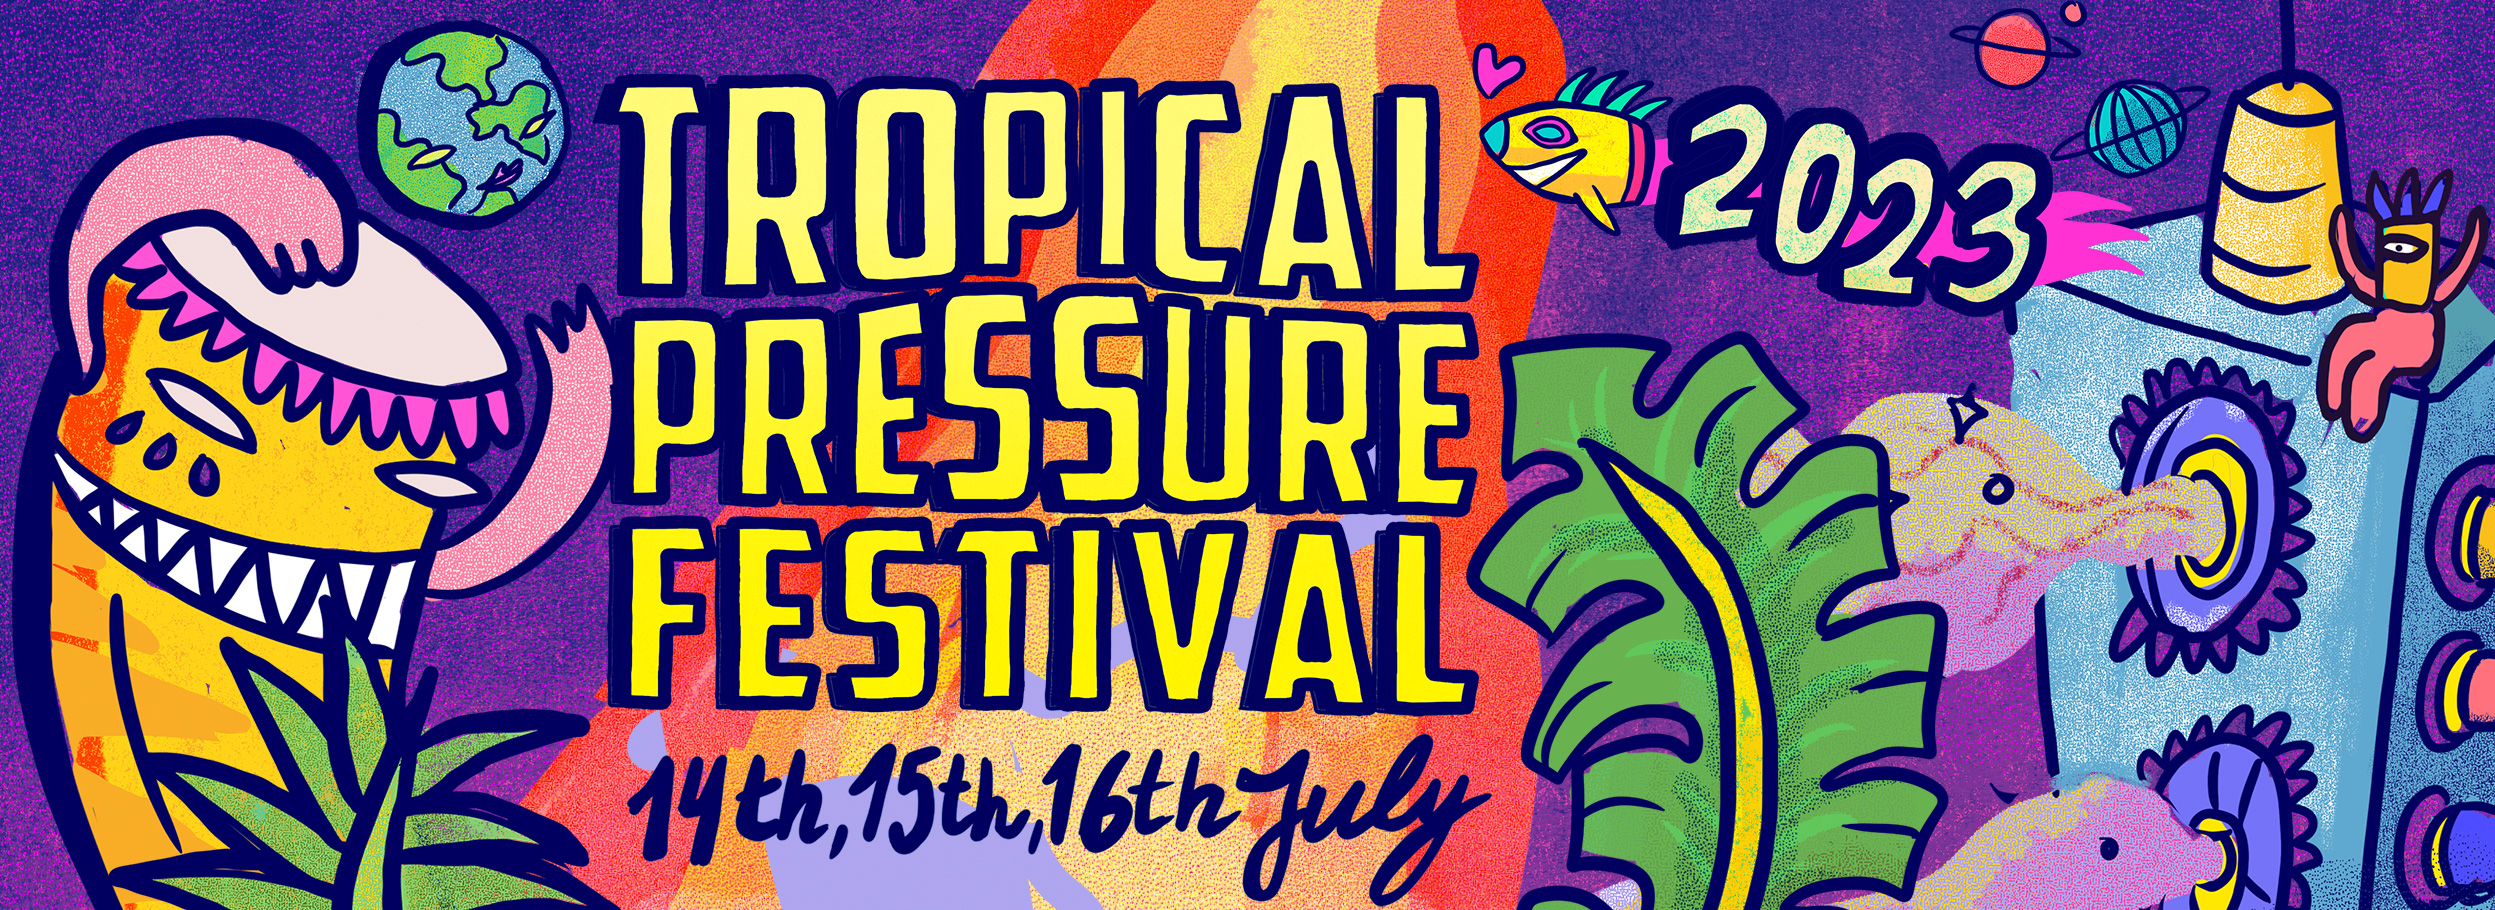 RouteNote are coming to Tropical Pressure Festival